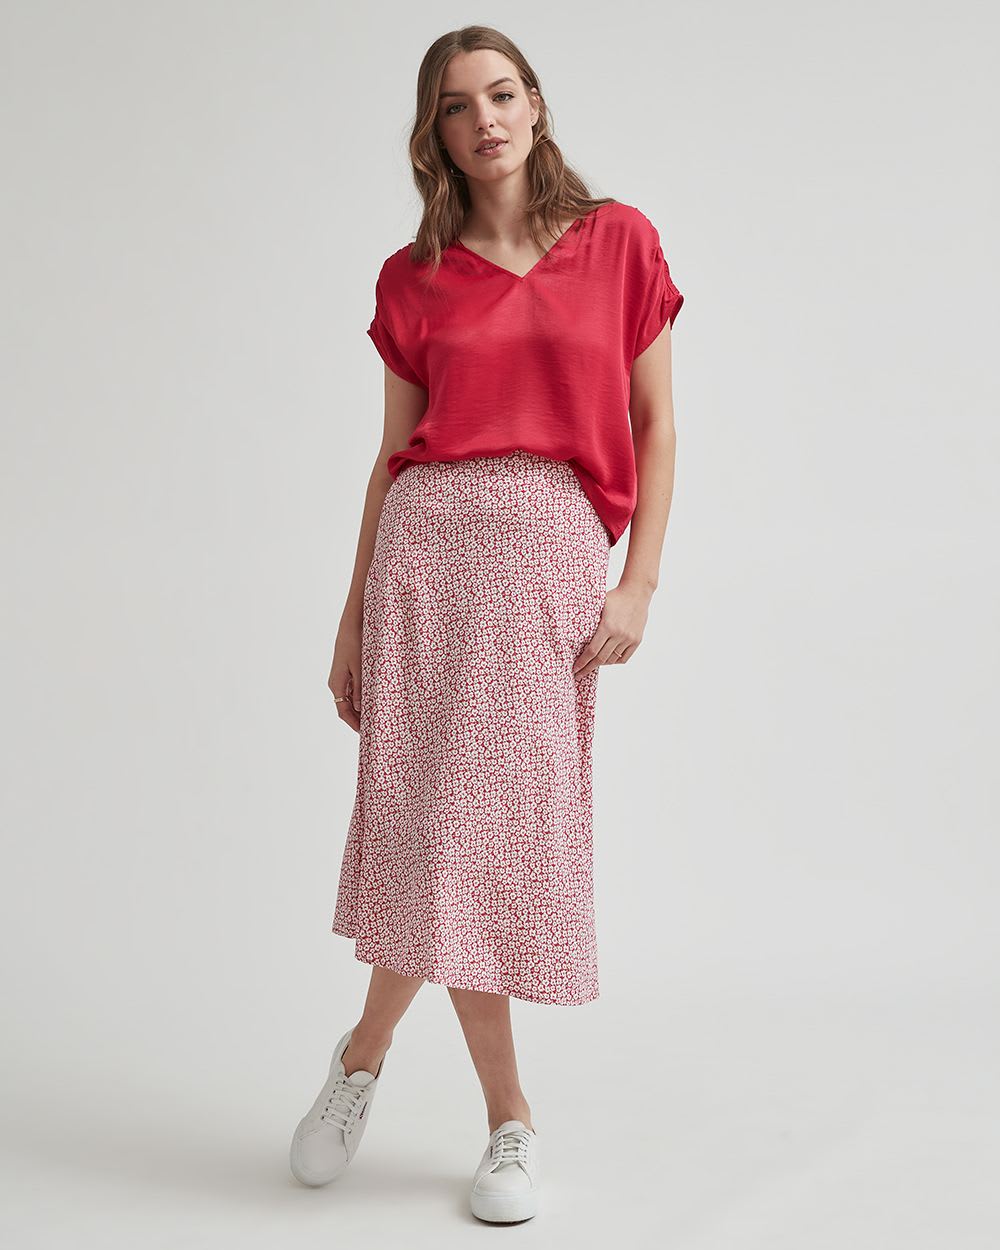 Floral High-Waisted A-Line Midi Skirt